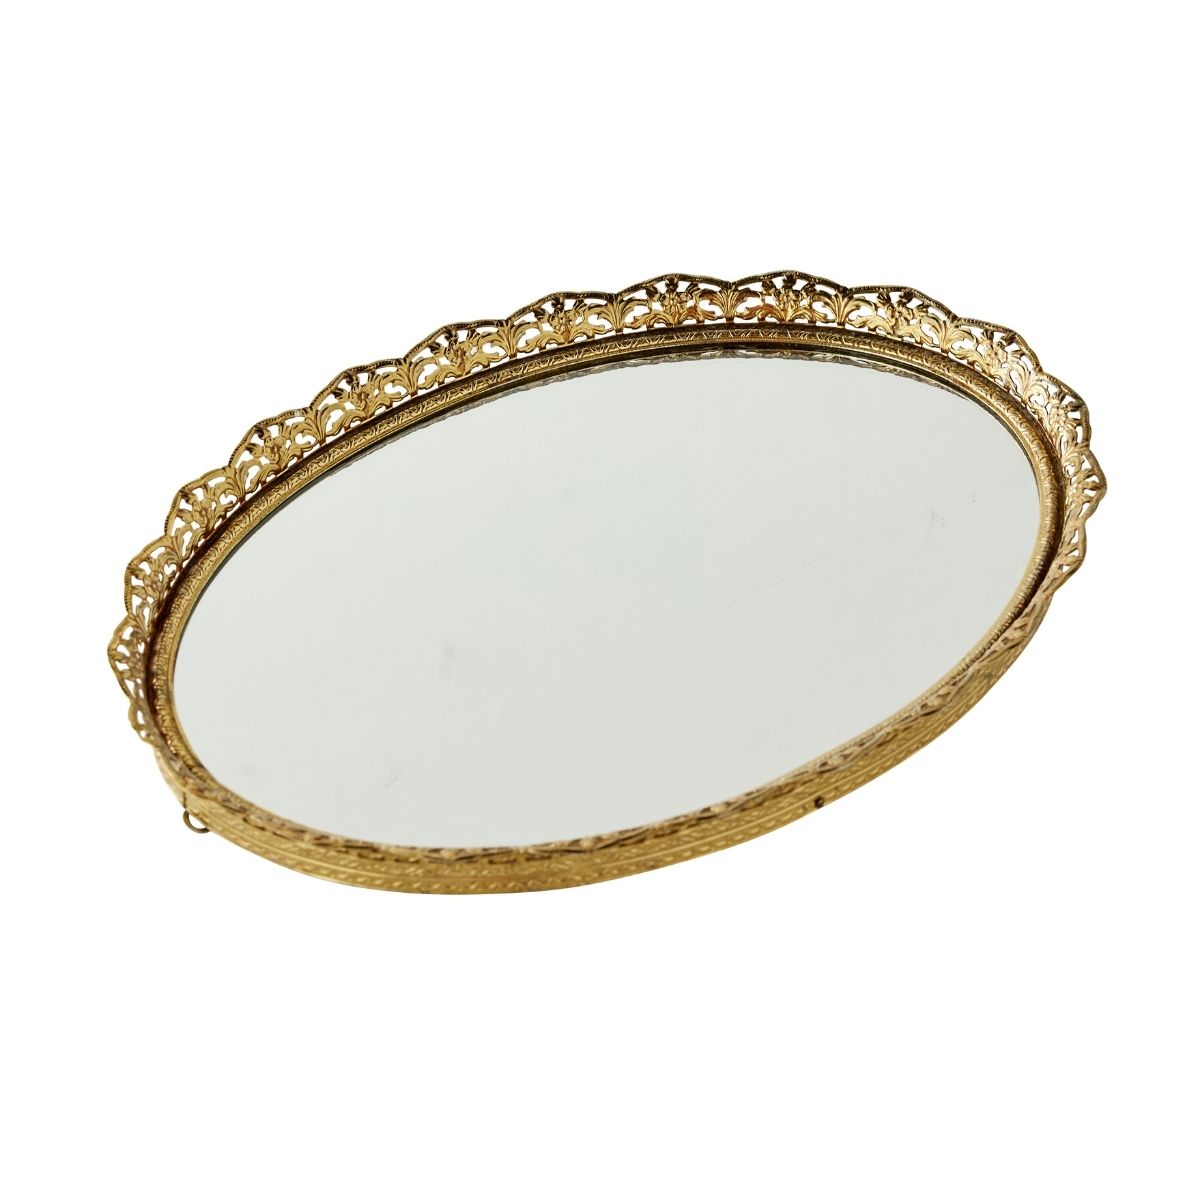 Oval Mirror Plate - Caitlin Wilson Design